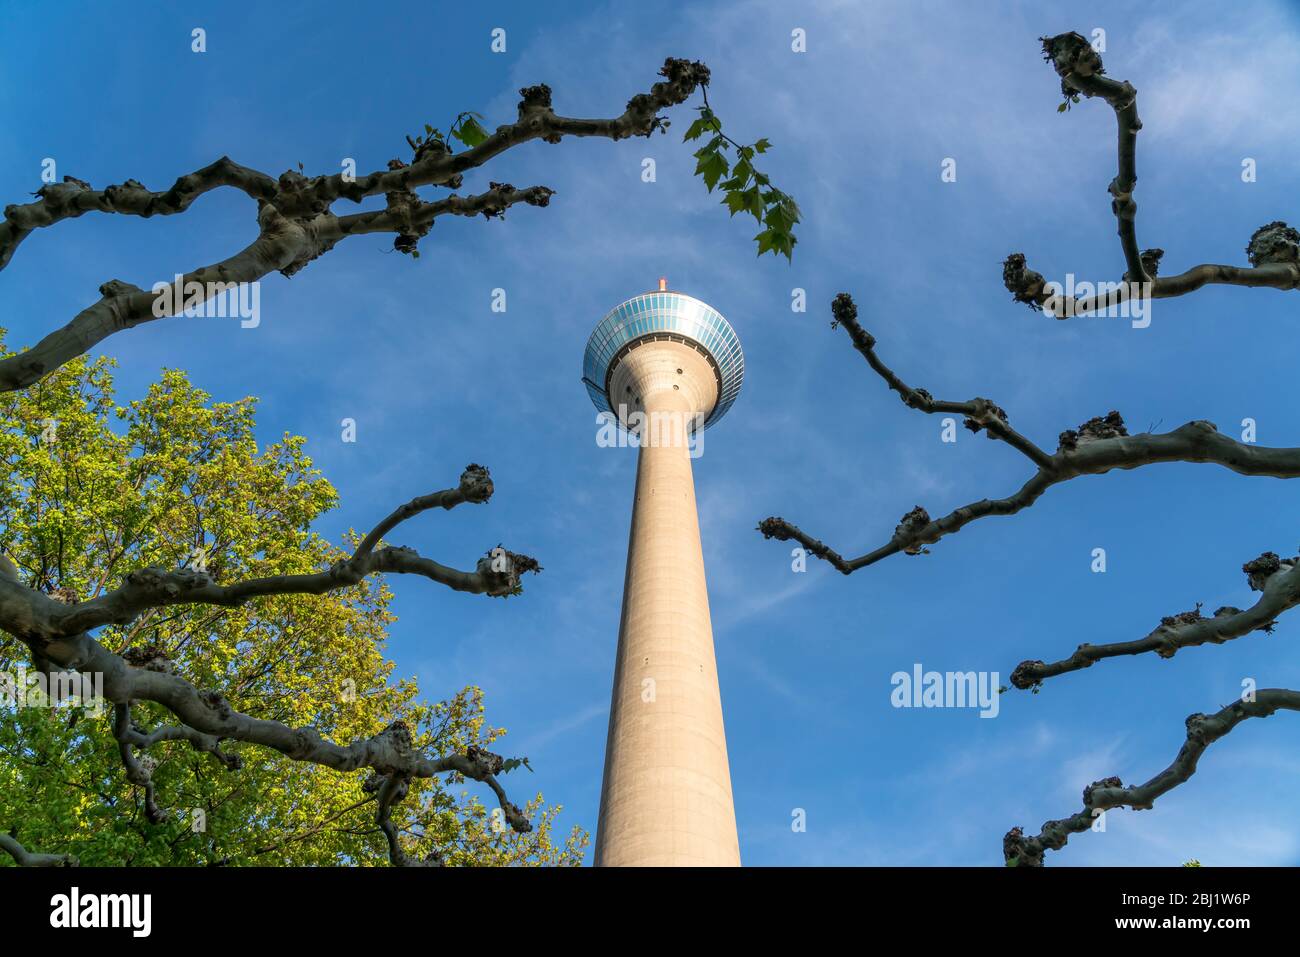 Fernsehturm Rheinturm, Landeshauptstadt Duesseldorf, Nordrhein-Westfalen, Deutschland, Europa |  Rhine Tower  telecommunications tower, federal state Stock Photo